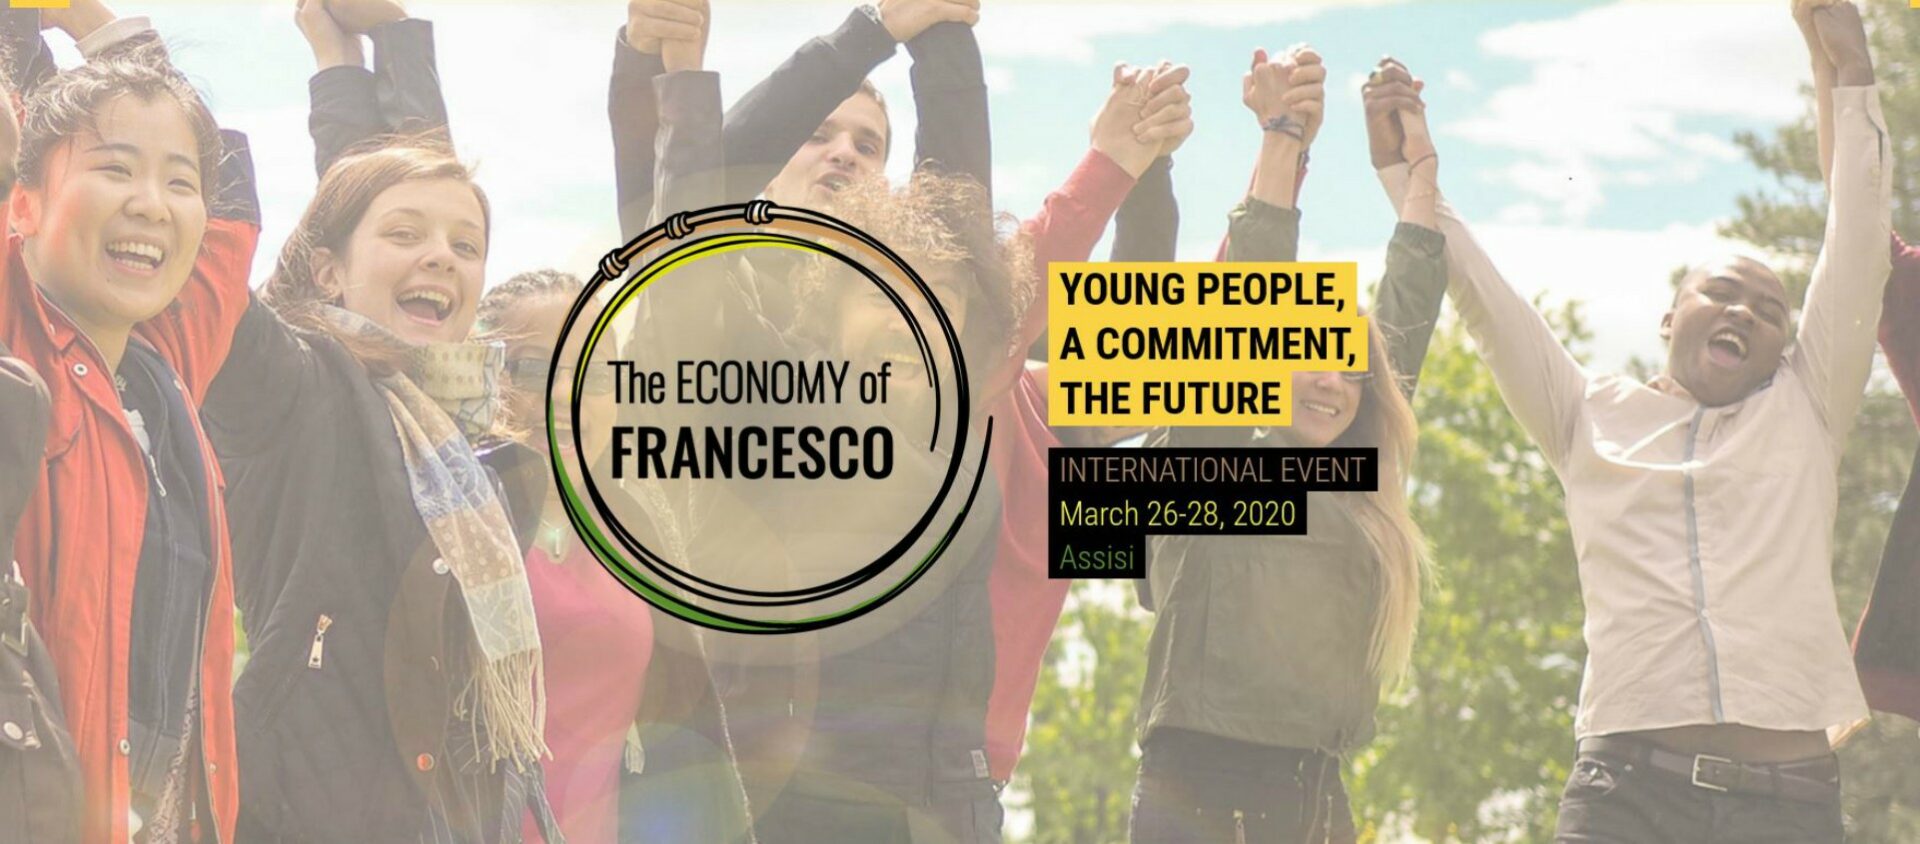 Le rassemblement intitulé 'The Economy of Francesco' reporté en novembre prochain | francescoeconomy.org